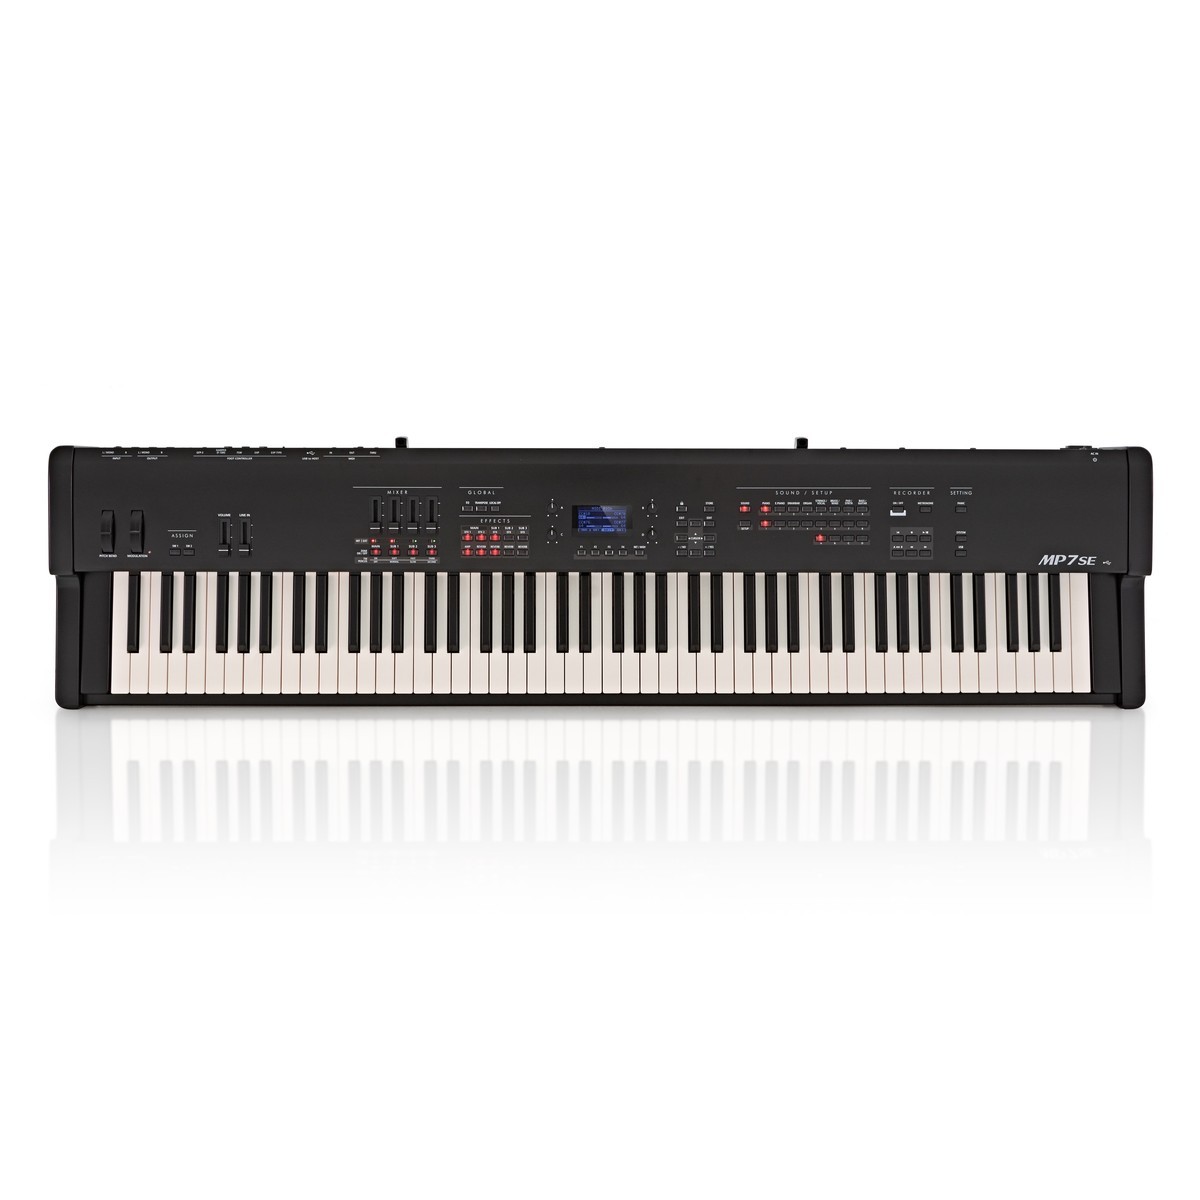 Piano digital de 88 teclas, tamaño completo, juego de teclado electrónico  semipesado con soporte, altavoces integrados, teclado de piano eléctrico  con